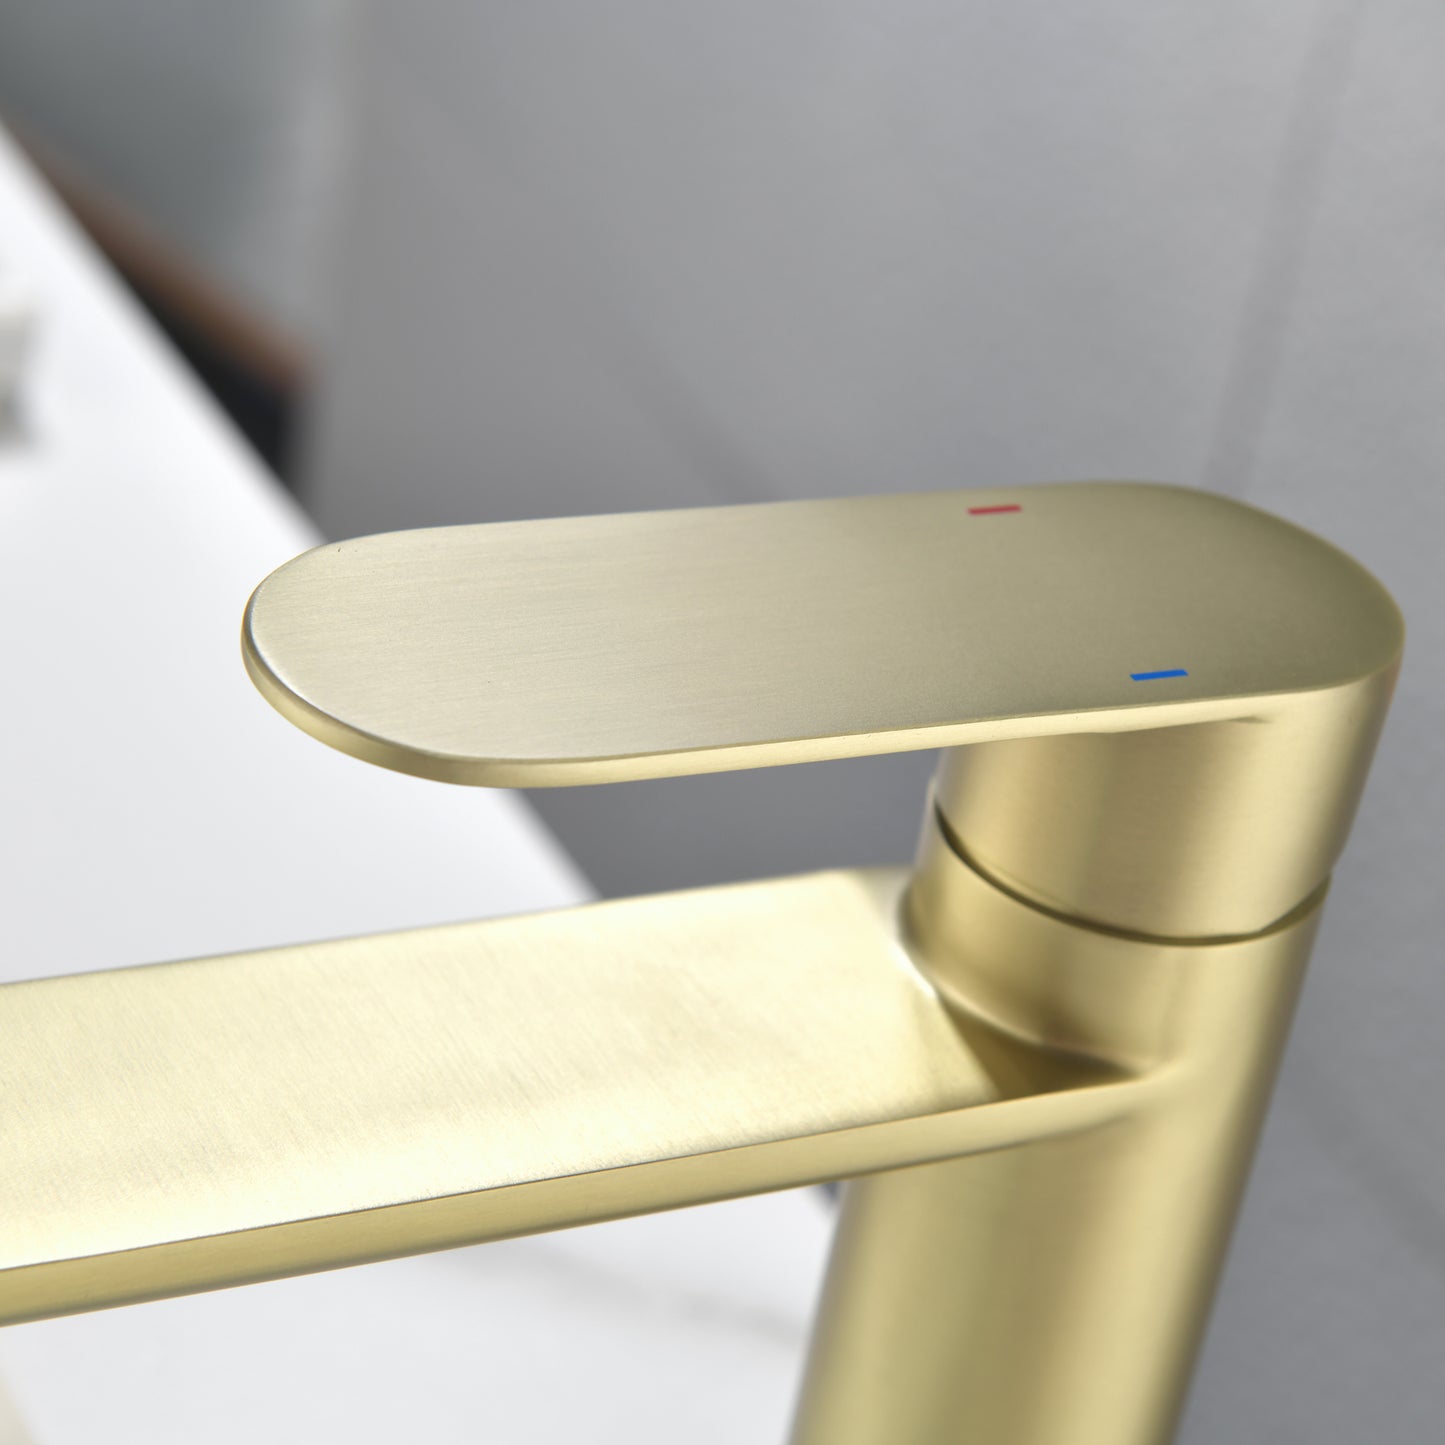 Elegant Gold Bathroom Fixture